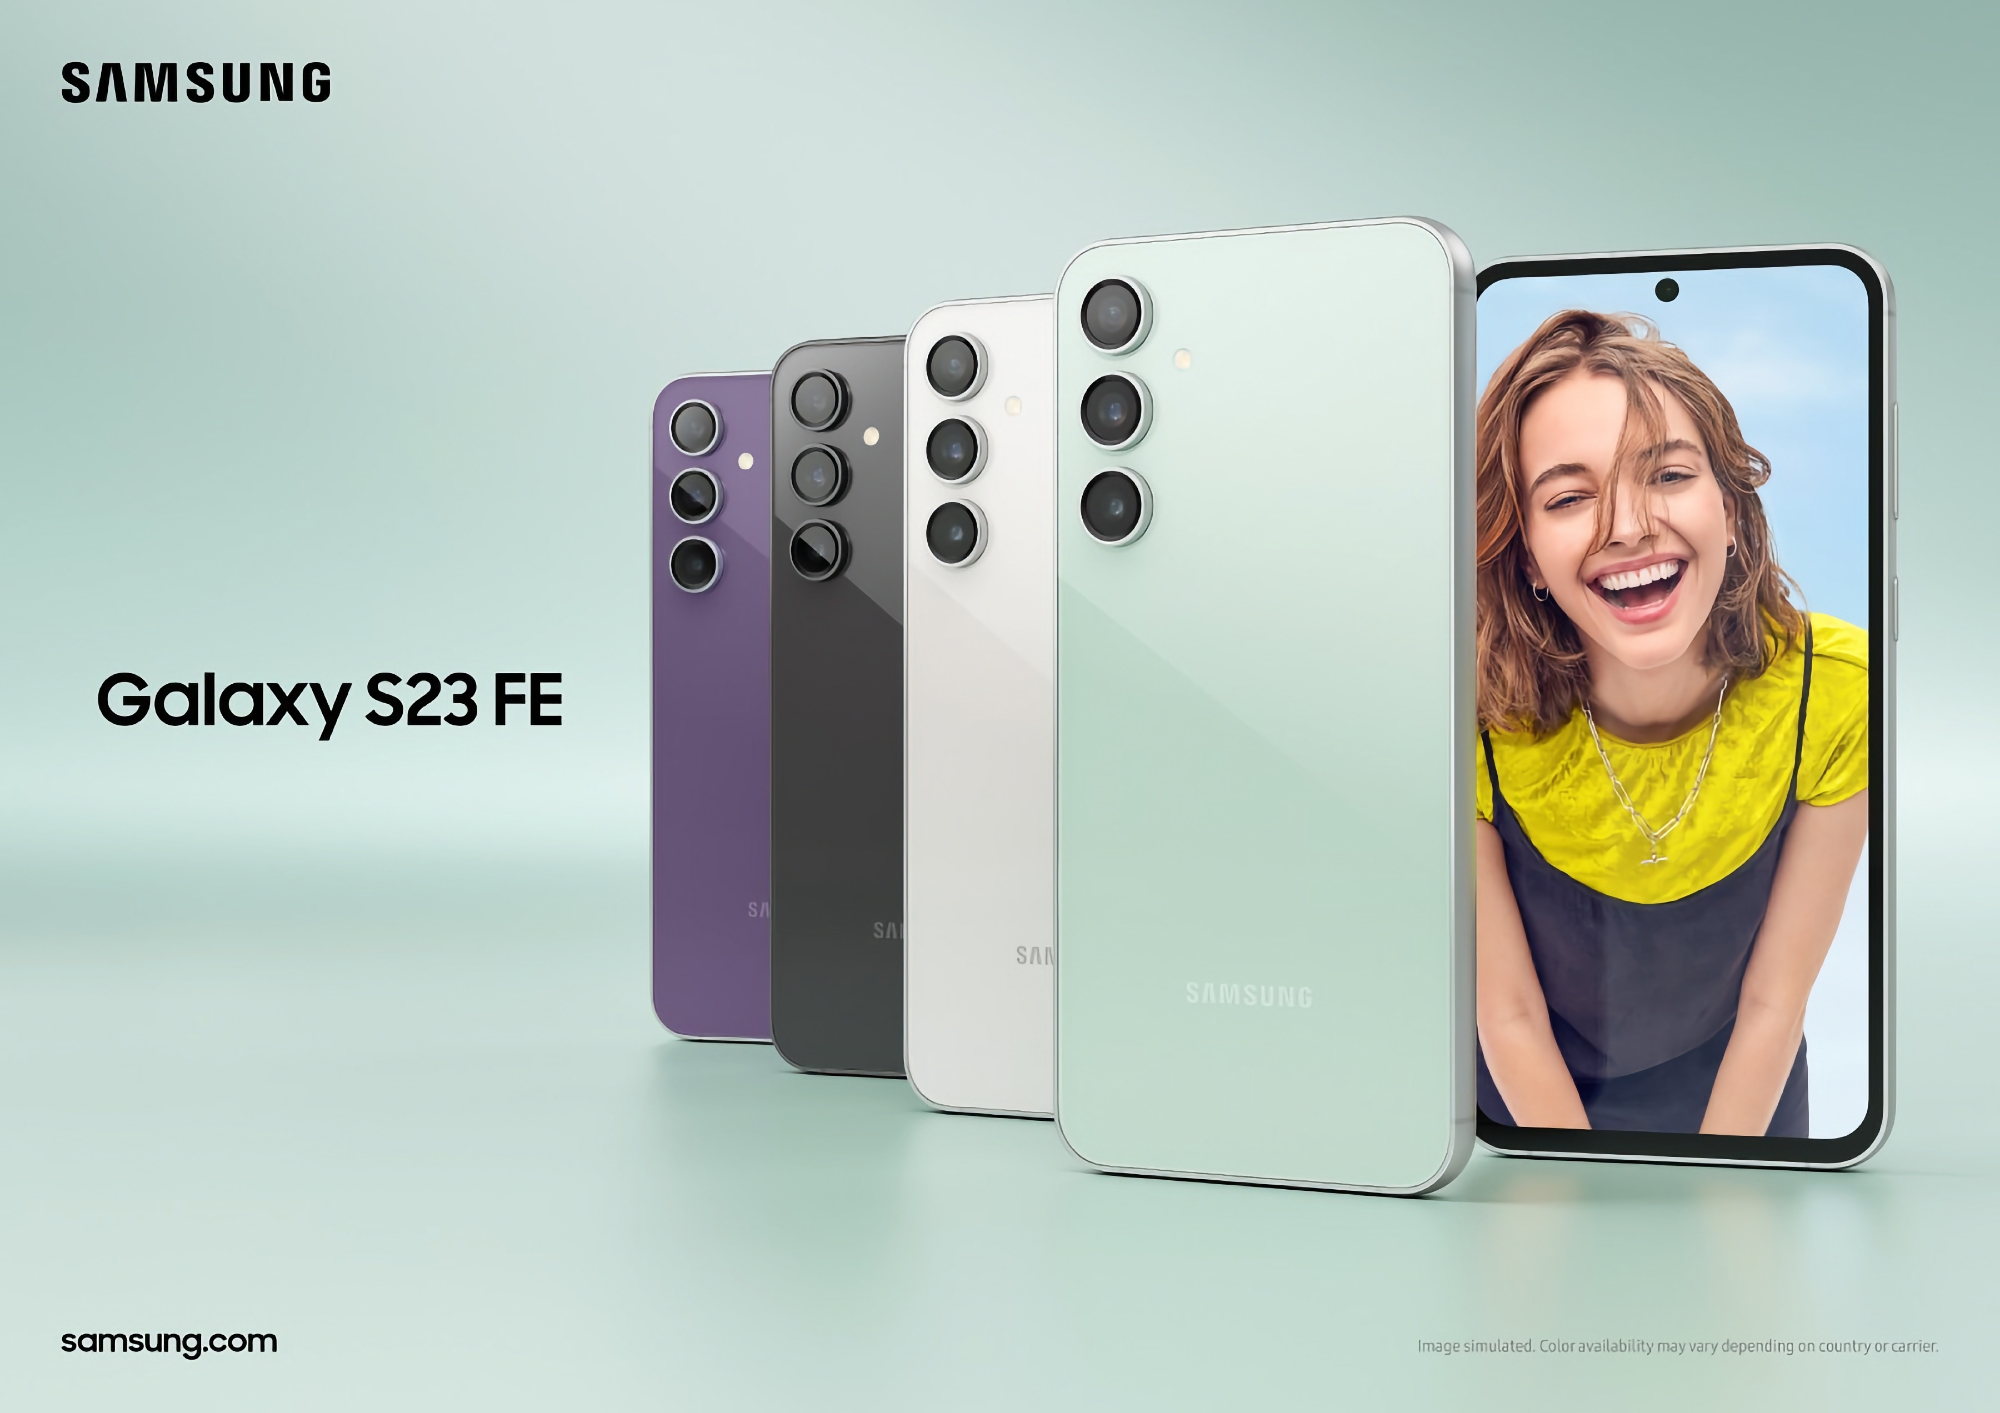 Samsung Galaxy S23 FE con display OLED a 120 Hz, chip Snapdragon 8 Gen 1 e fotocamera da 50 MP ha iniziato le vendite negli Stati Uniti